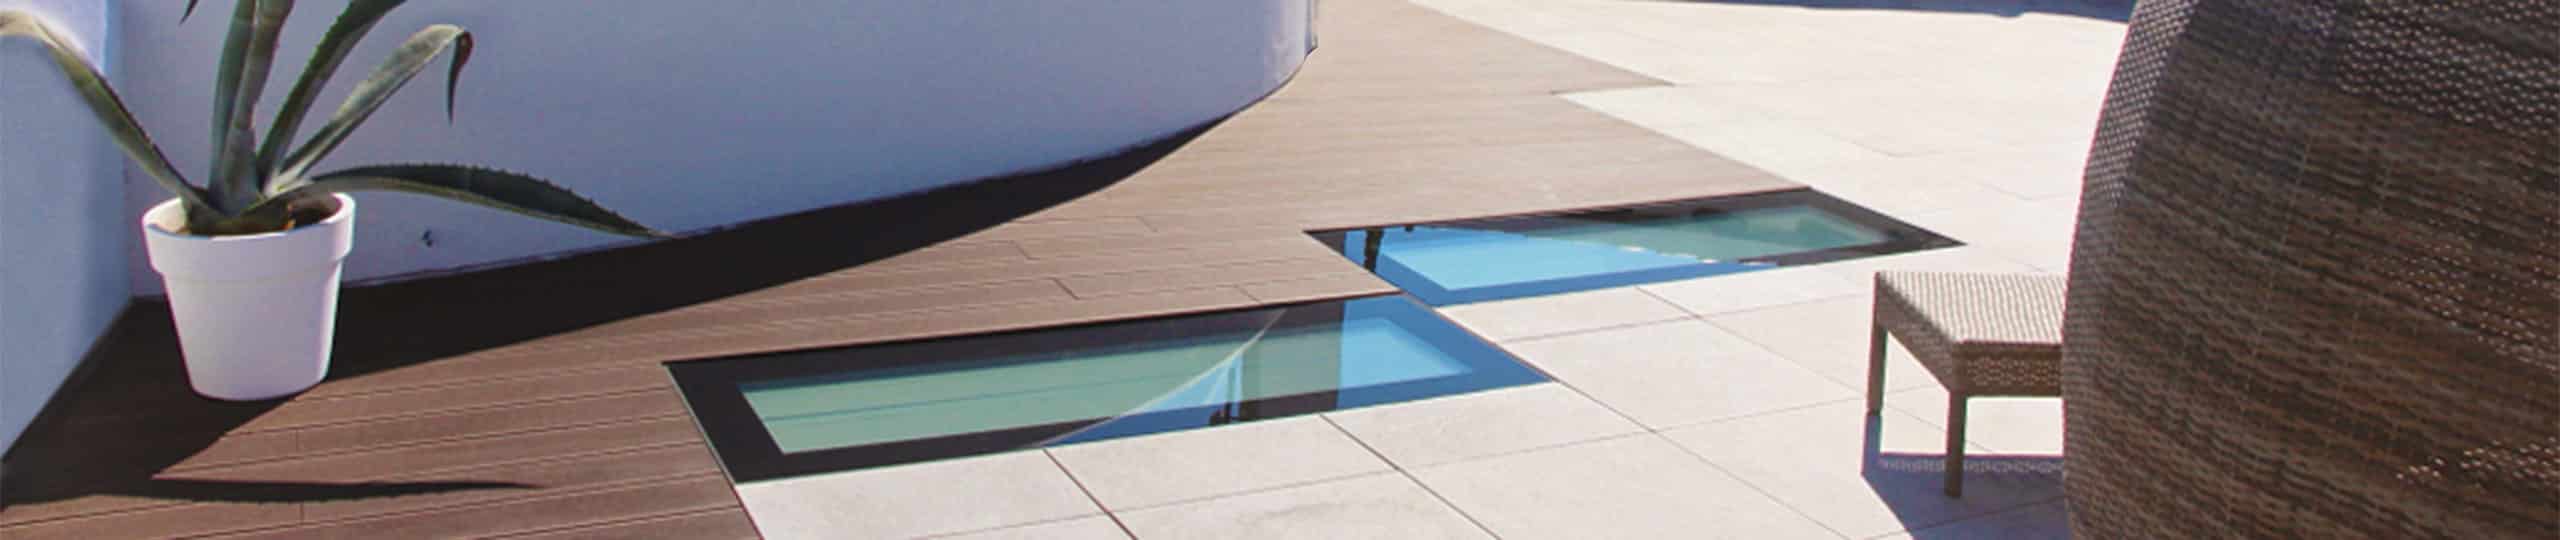 WALK-ON: Begehbare Glasflächen auf einer Dachterrasse